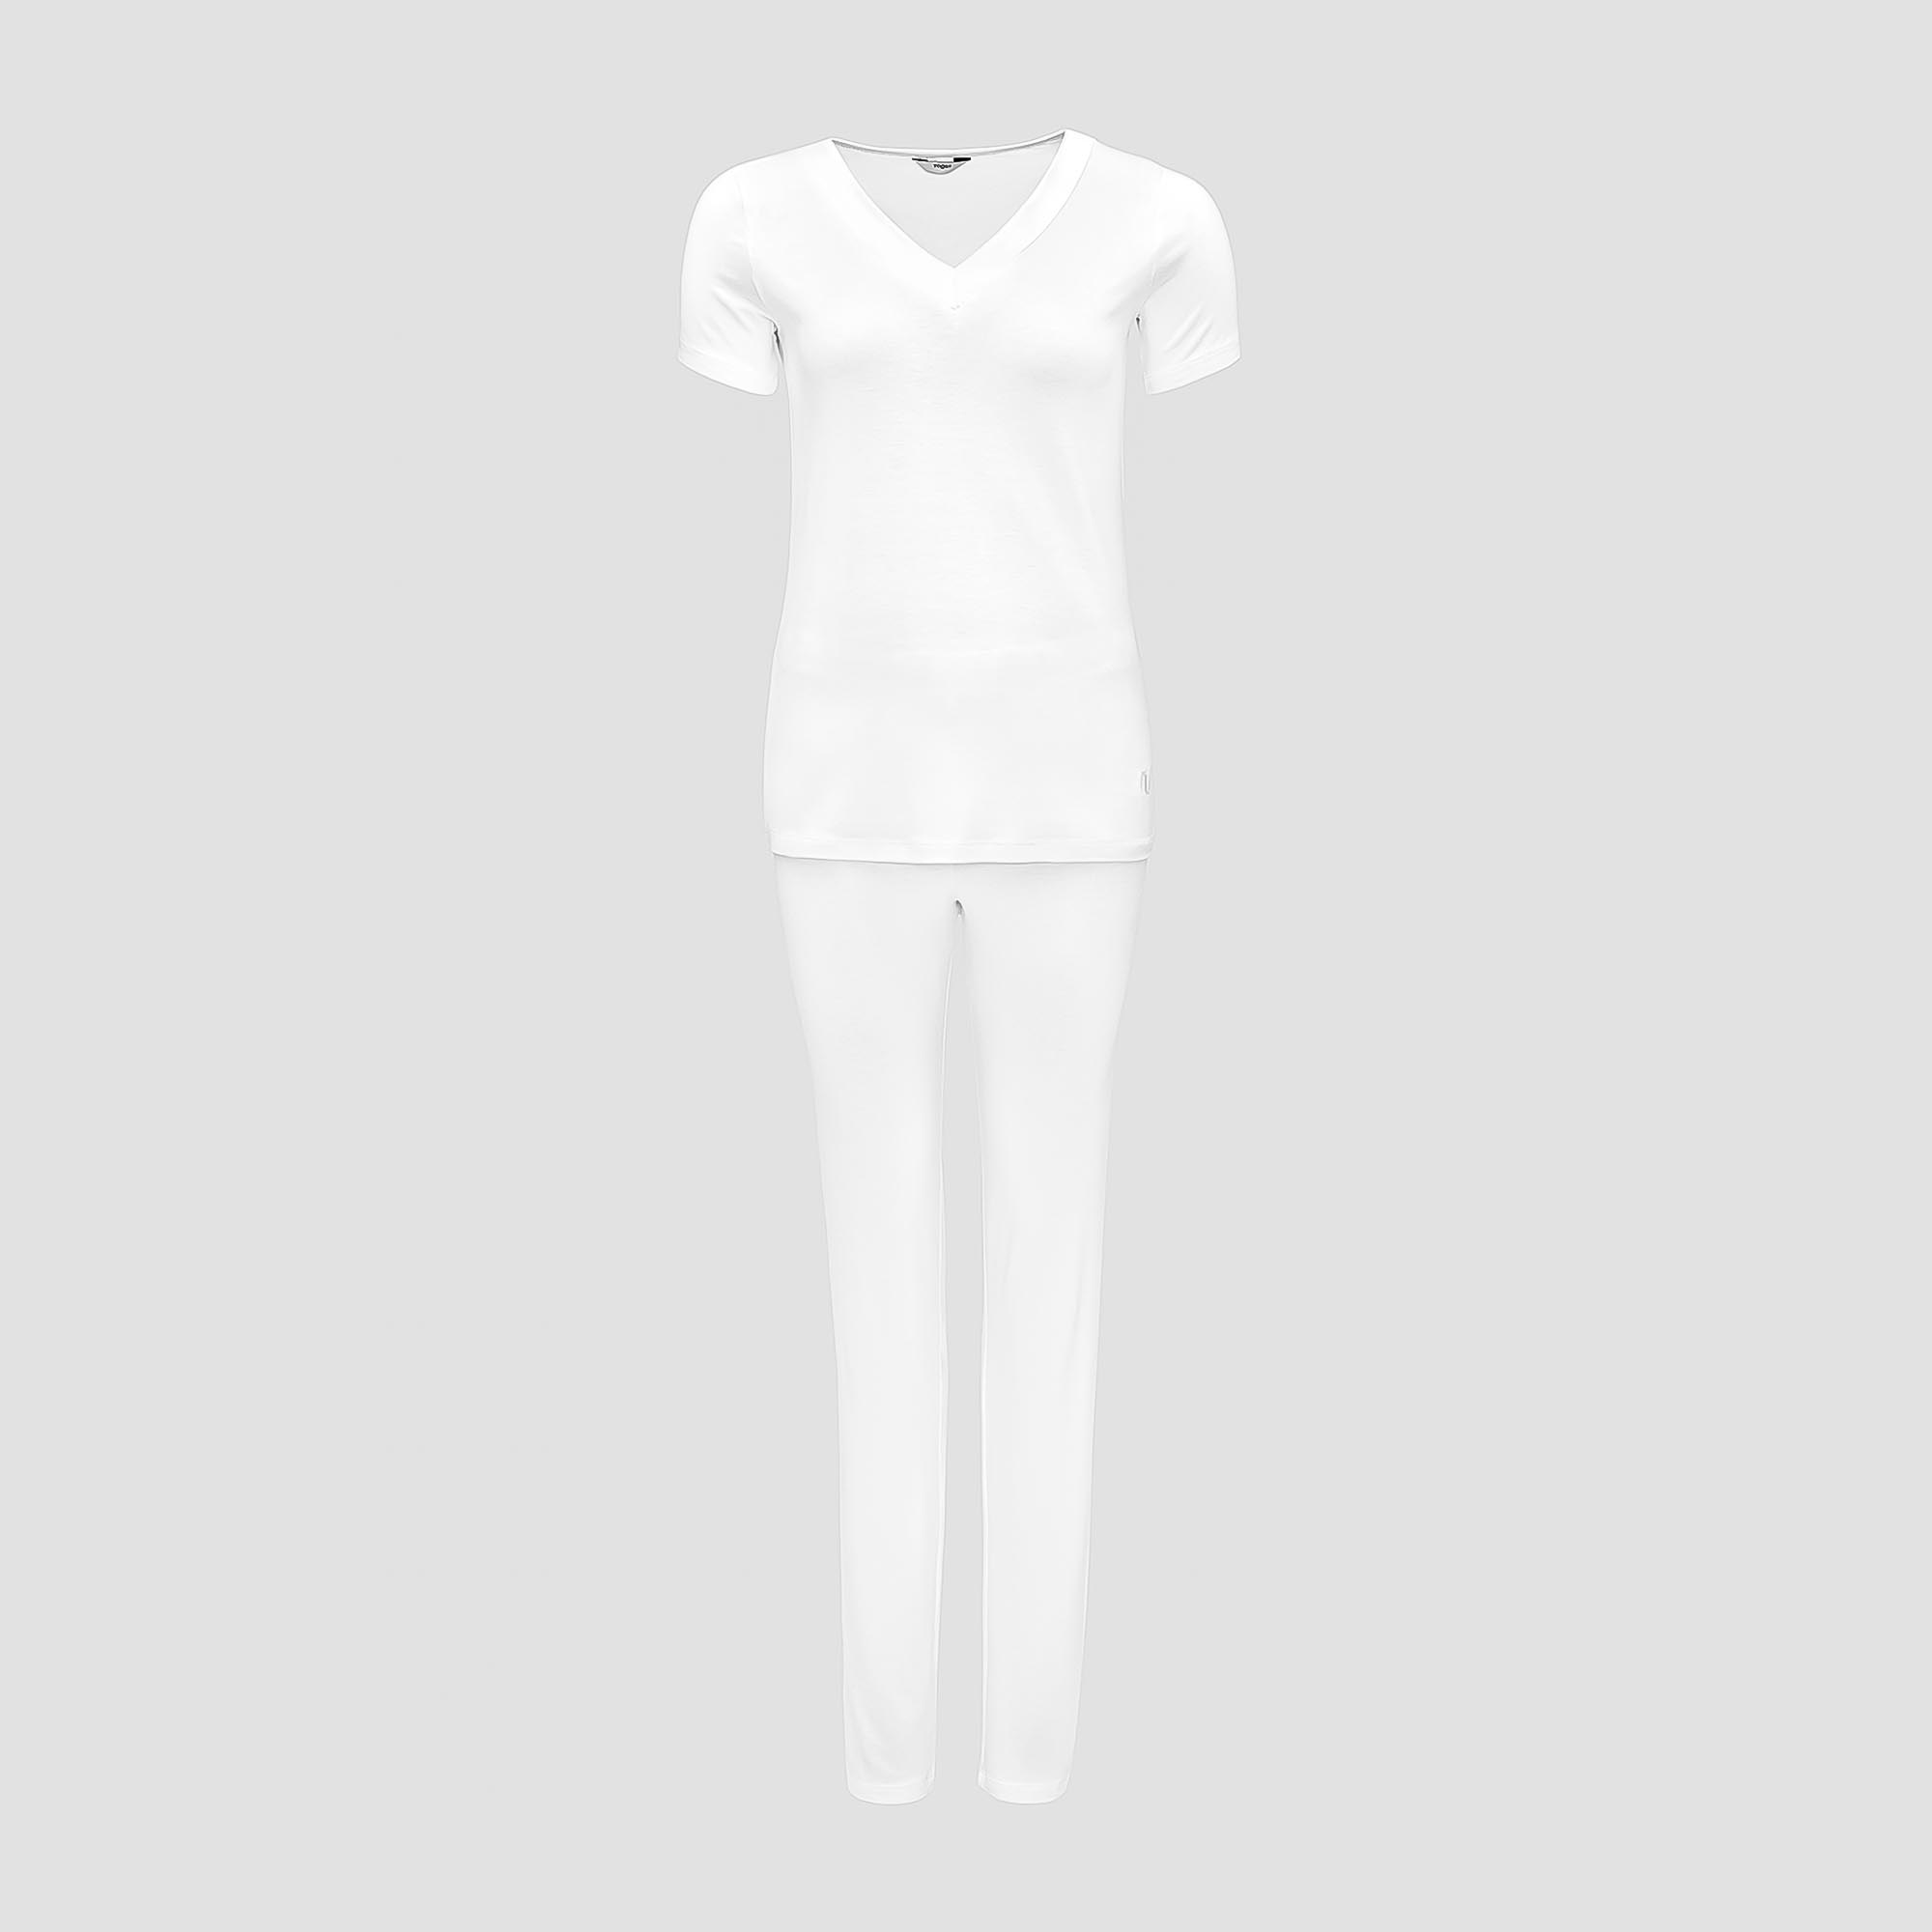 Пижама Togas Ингелла белая женская XL(50) 2 предмета жен пижама с шортами инь янь белый р 50